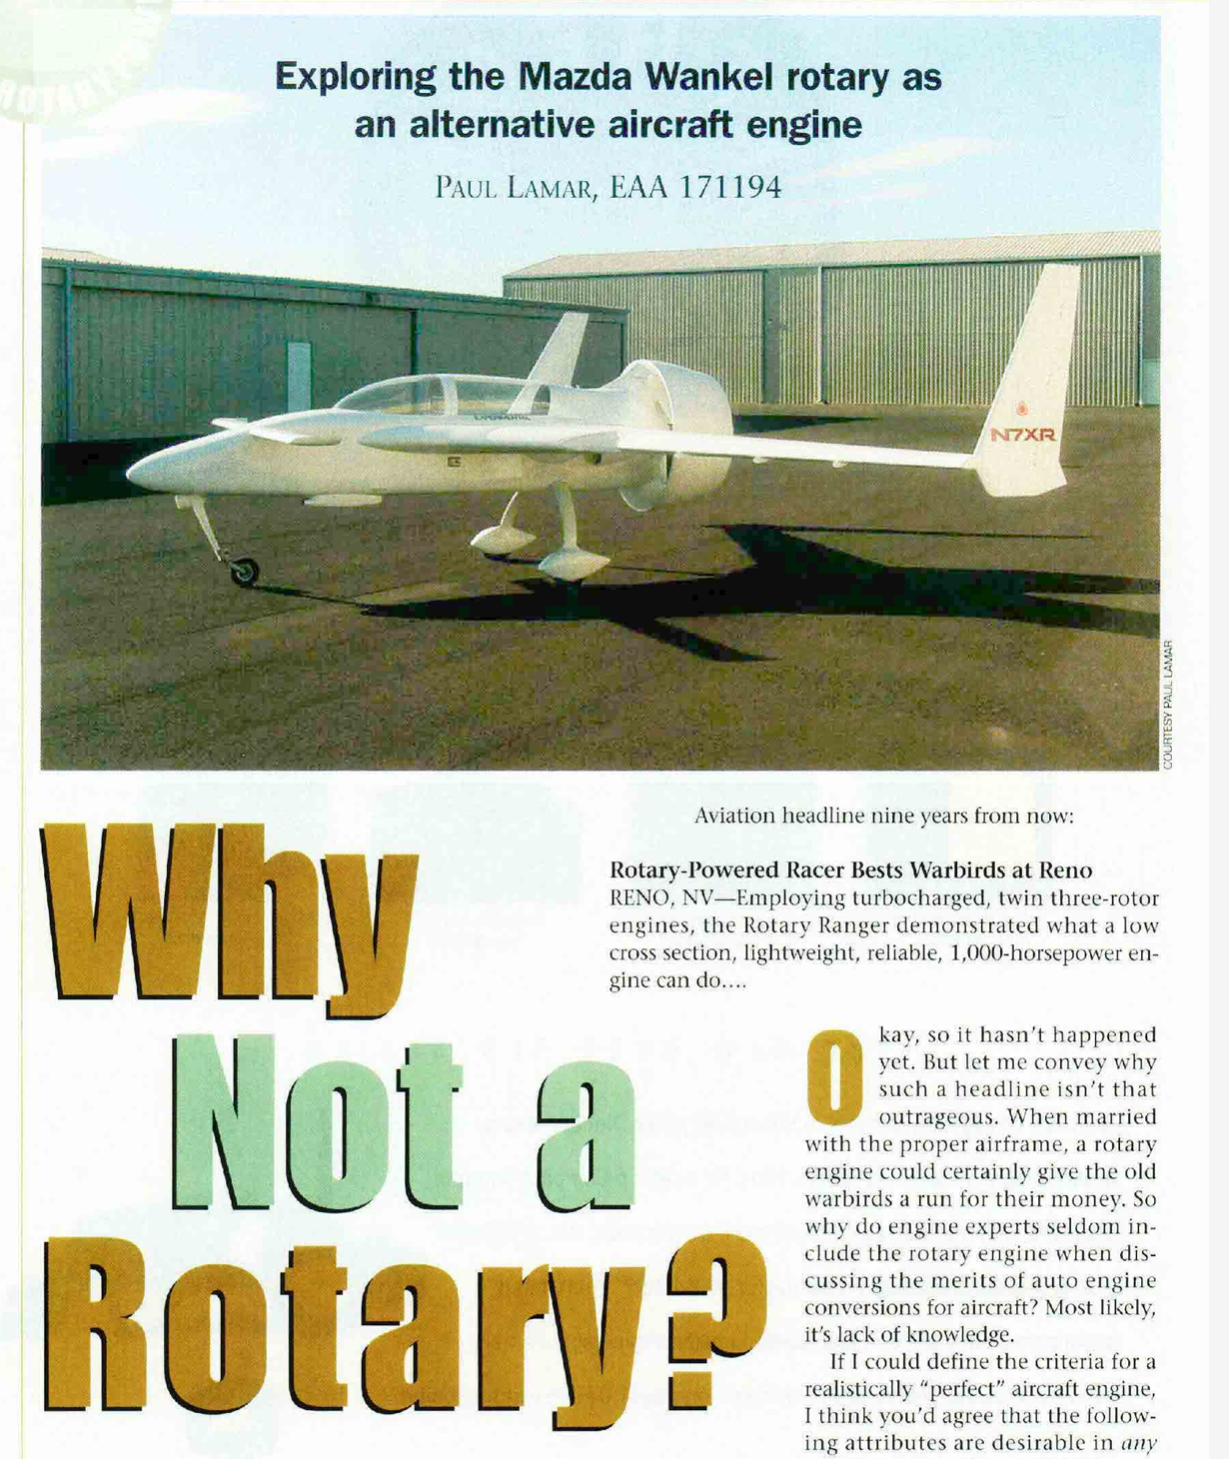 experimental amateur buildt aircraft